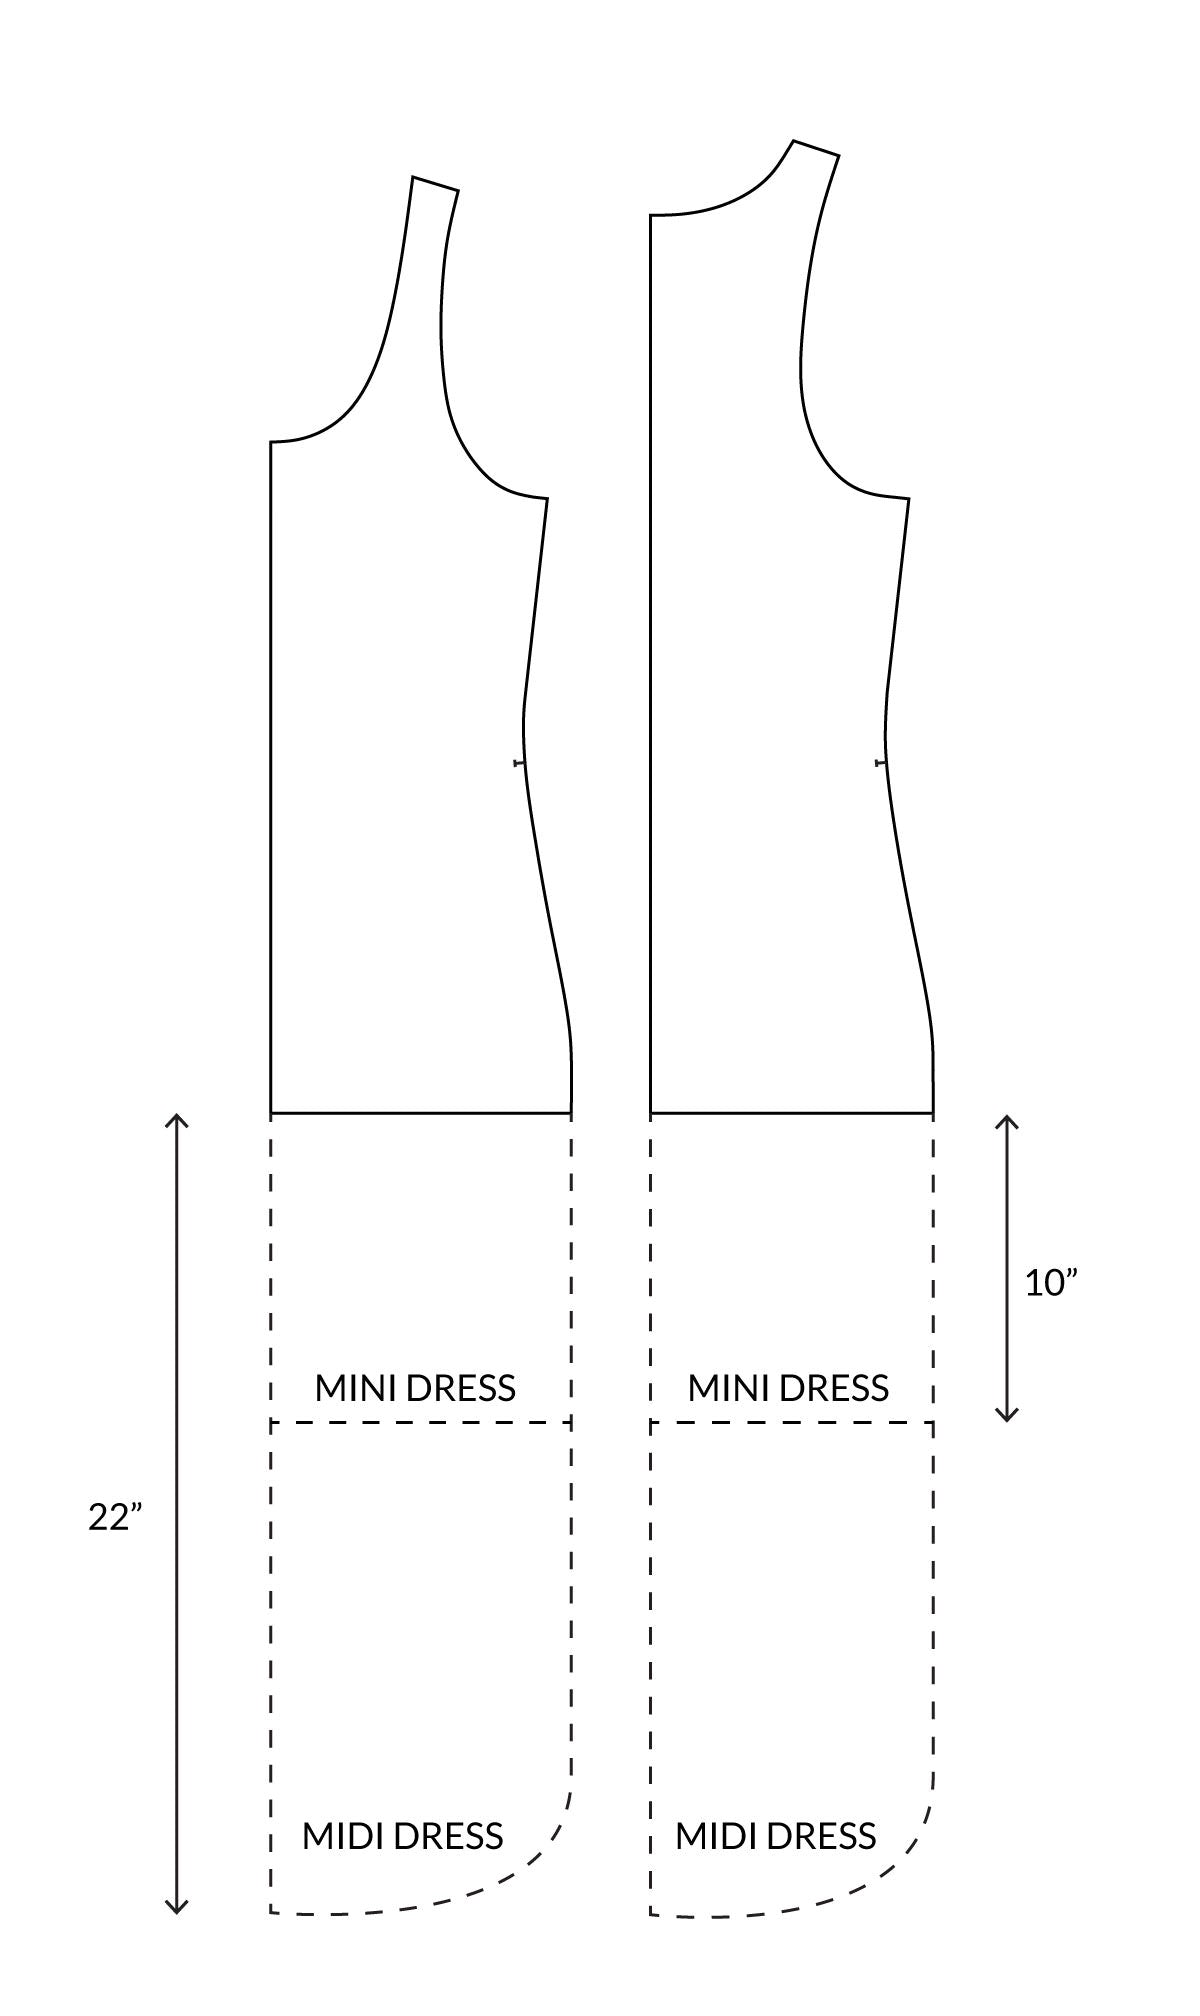 How to Lengthen the Kila Tank into a Dress